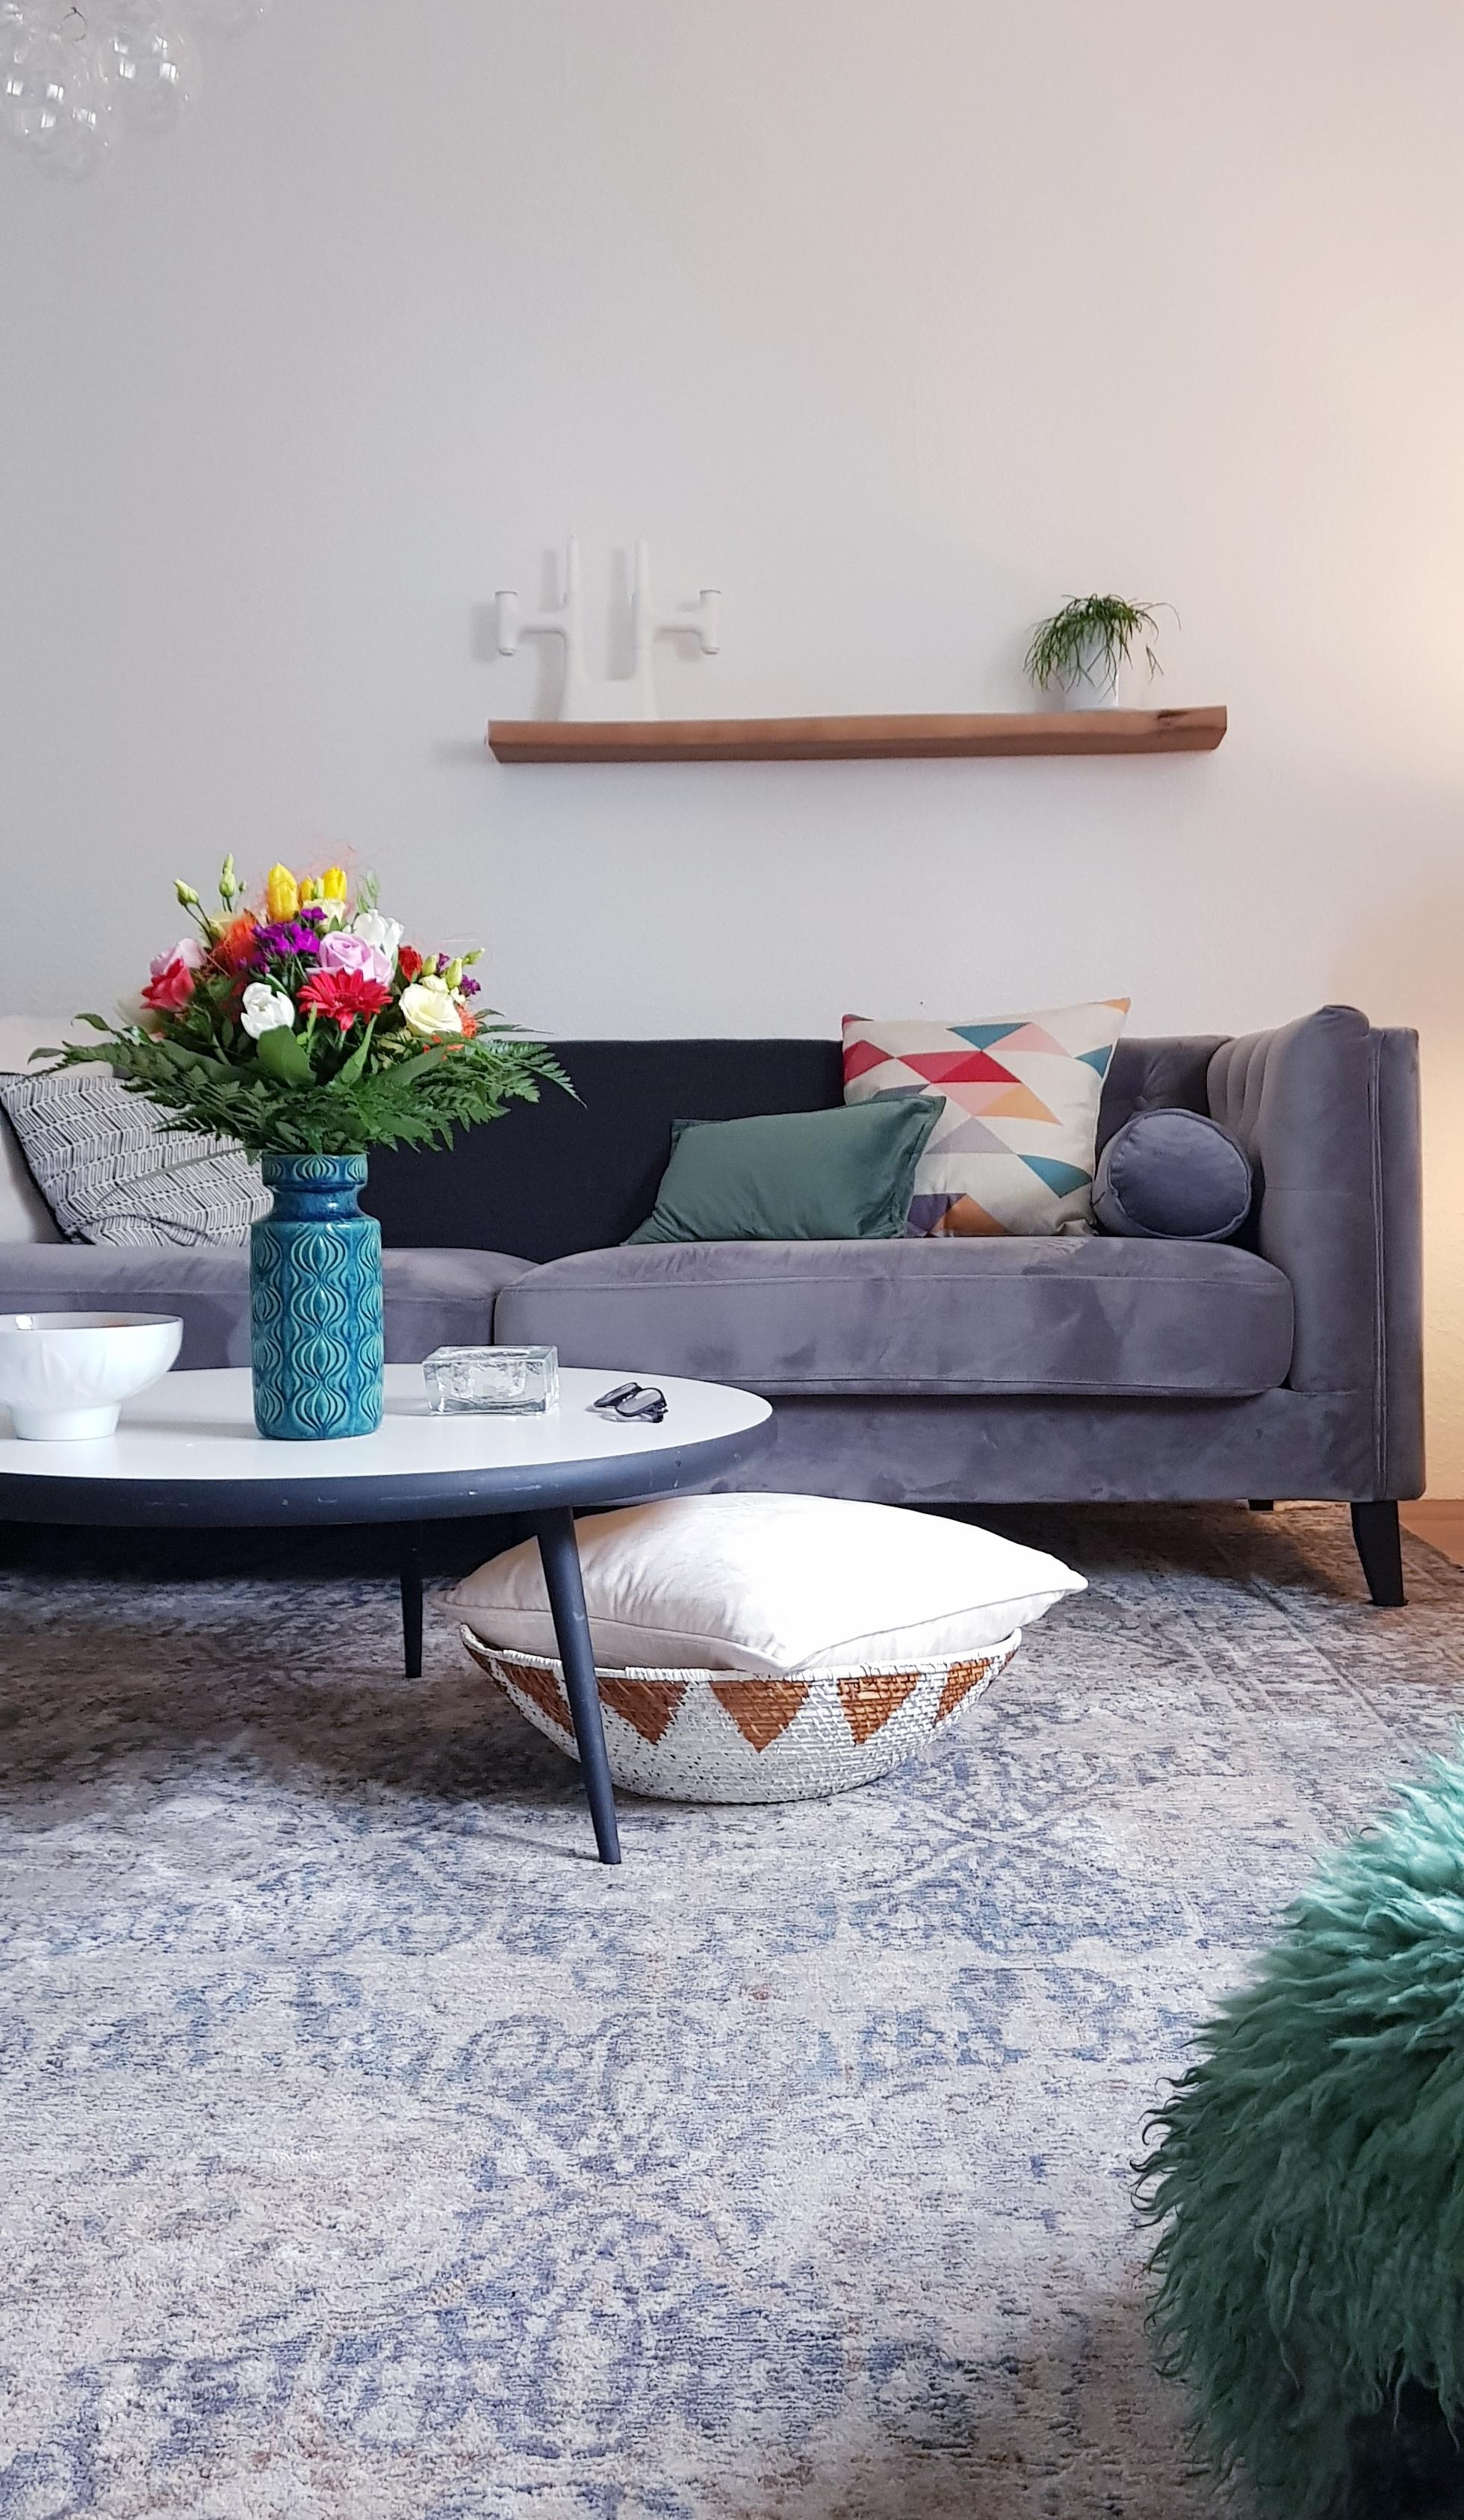 So schön bunt
#Blumenstrauß#wohnzimmer#sofa#vintage#Farbenfroh 